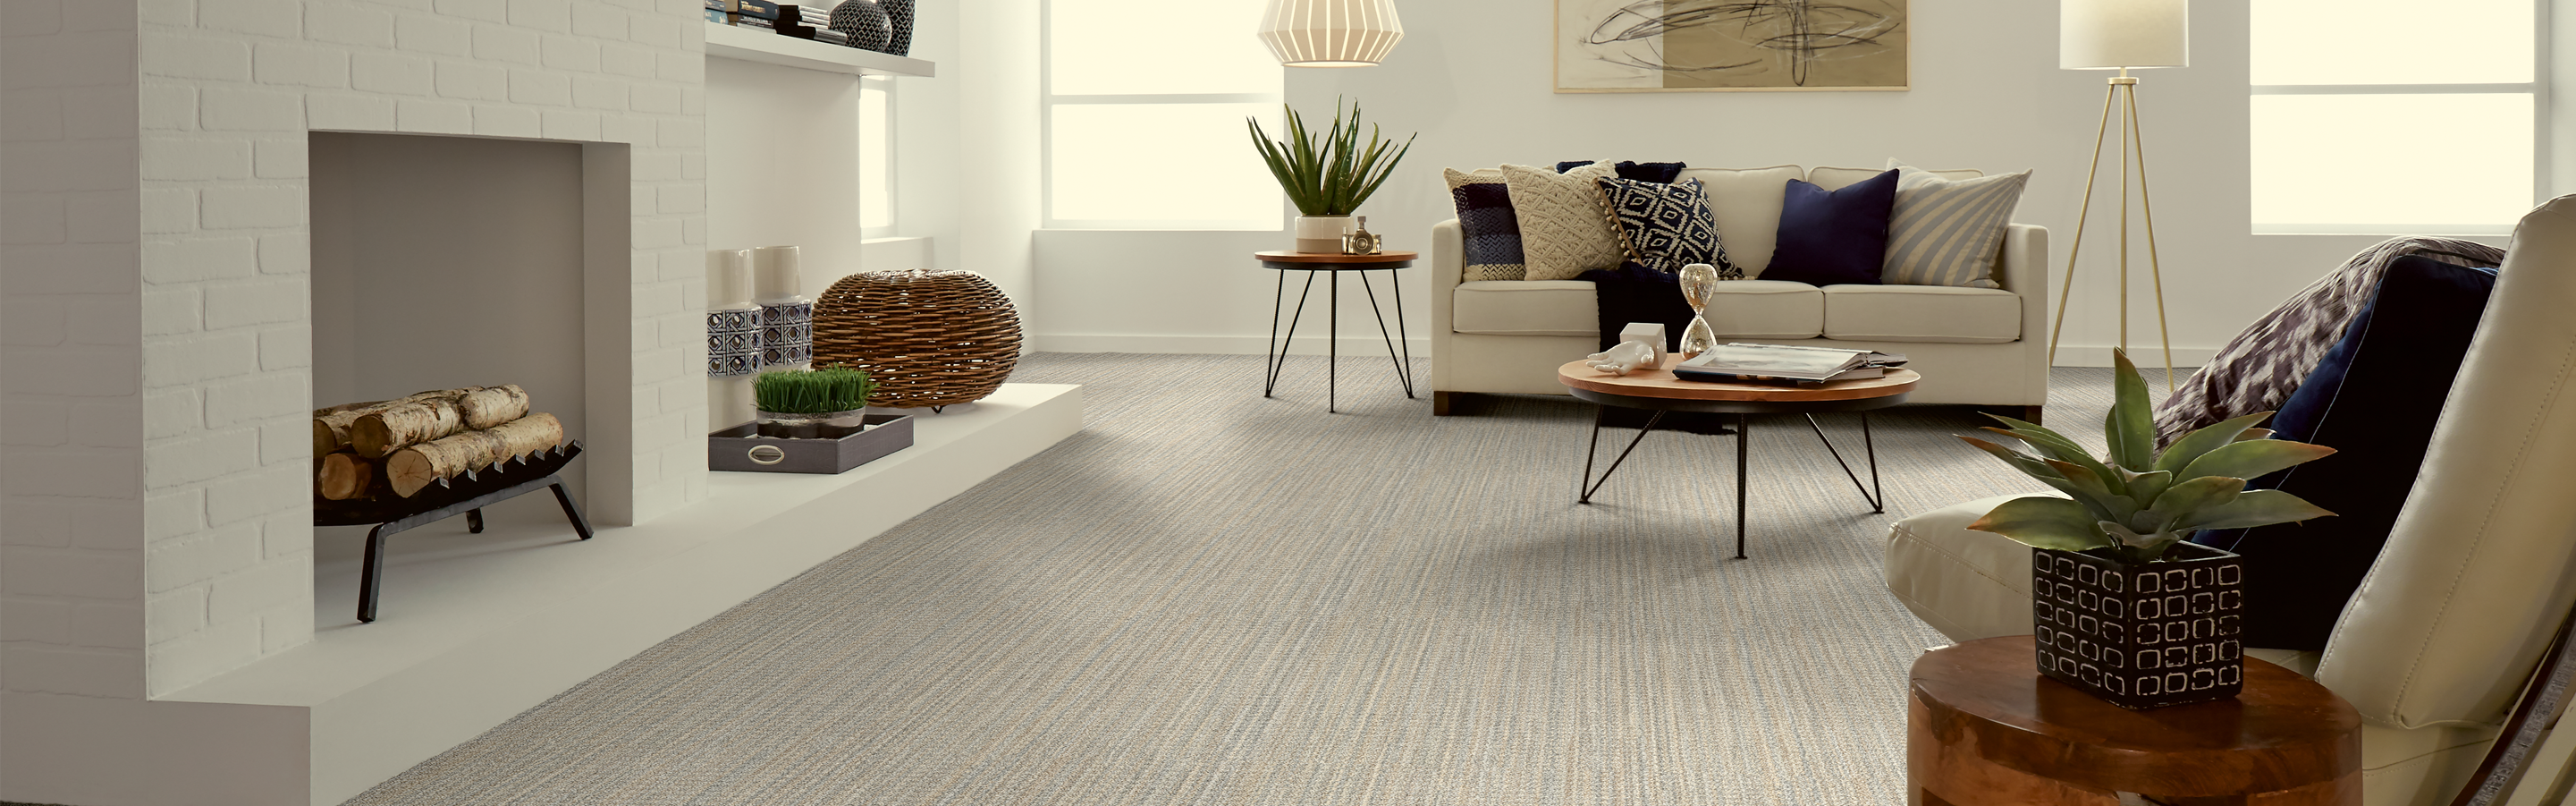 neutral greige patterned carpet in living room